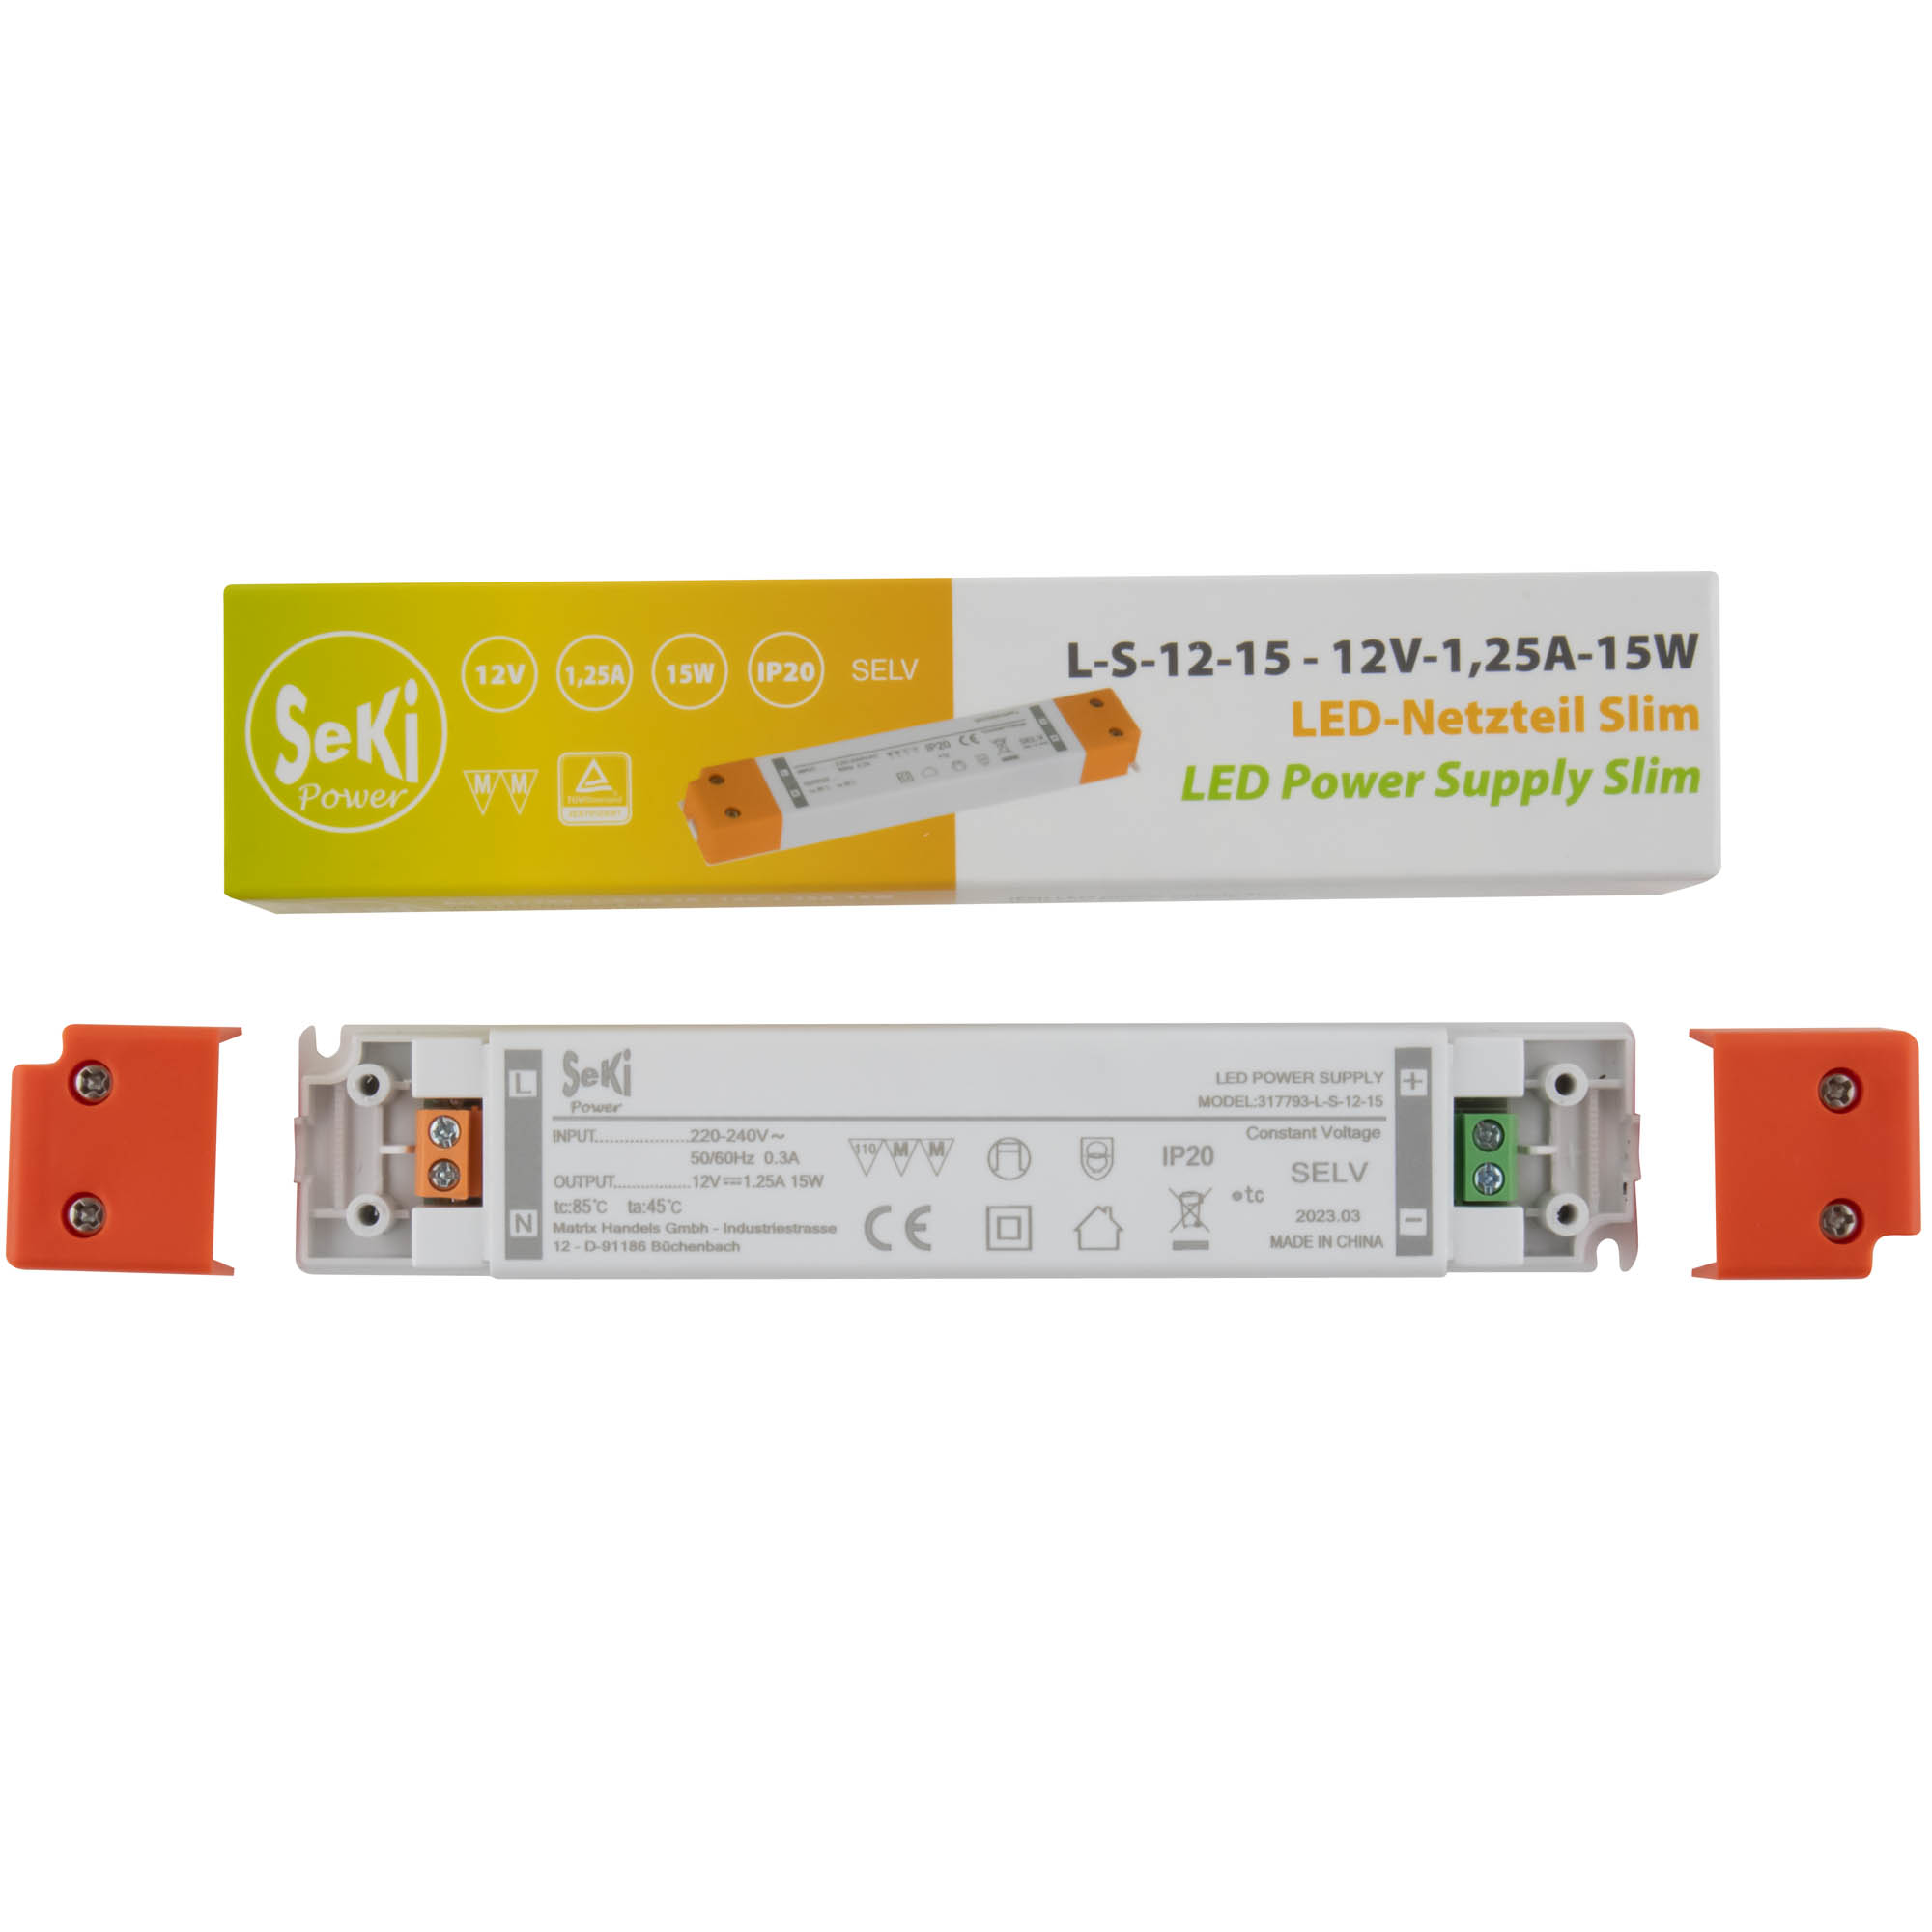 LED power supply Slim L-S-12-15 - 12V - 1,25A - 15W